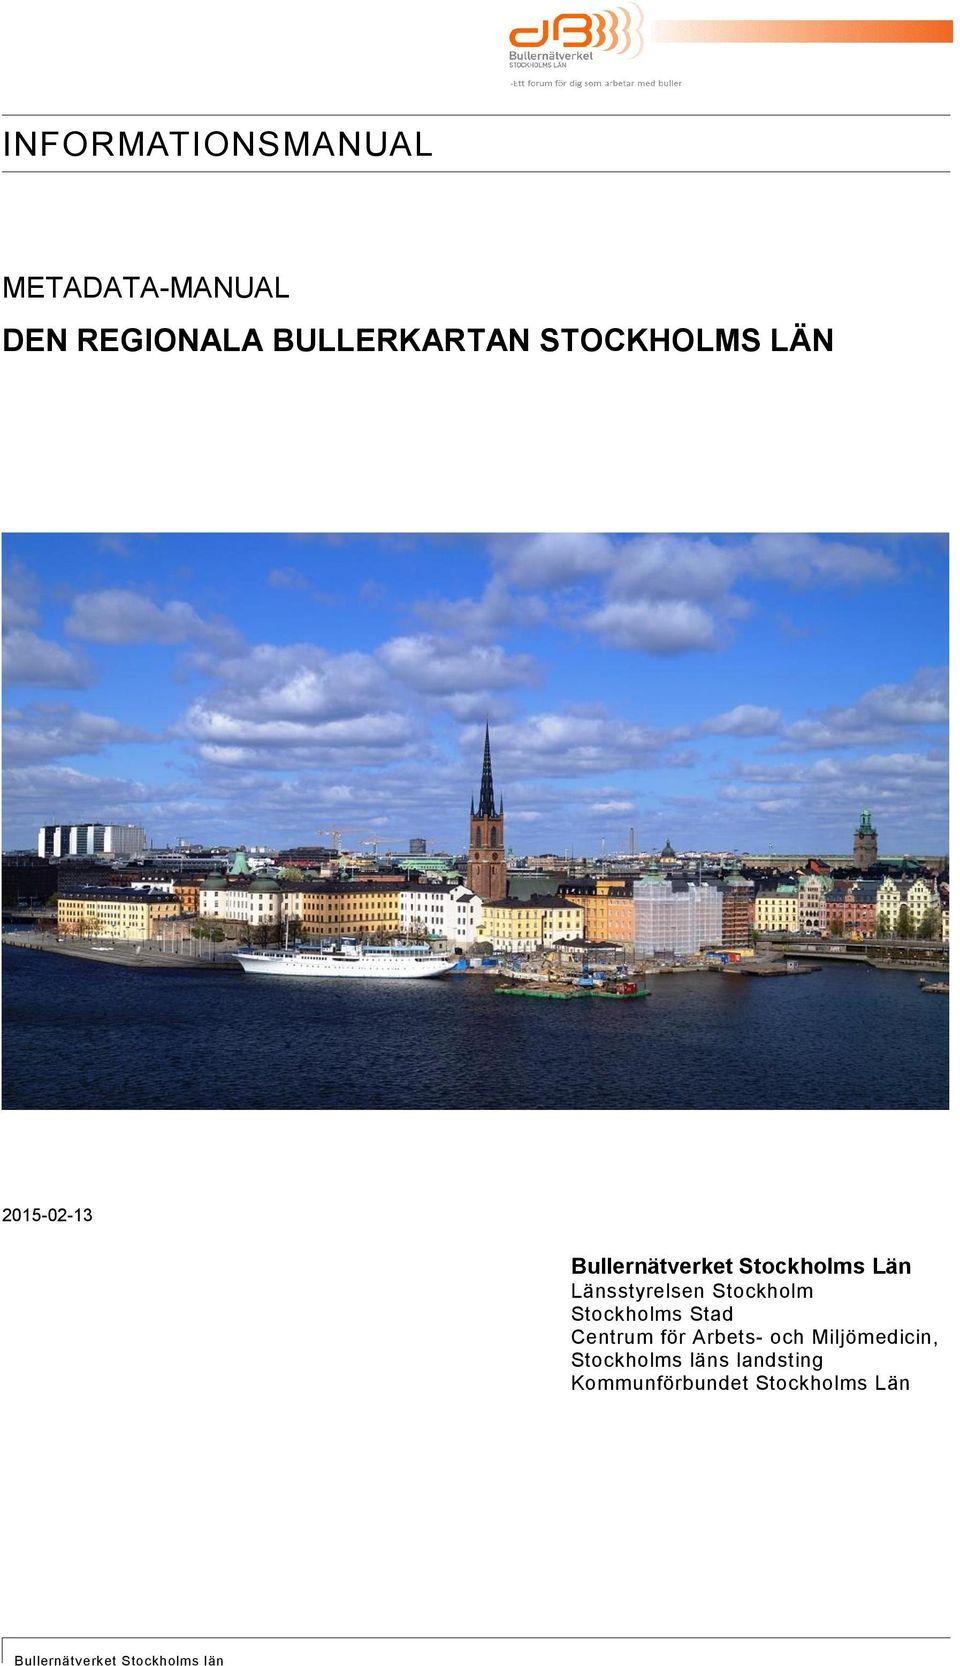 Stockholms Stad Centrum för Arbets och Miljömedicin,